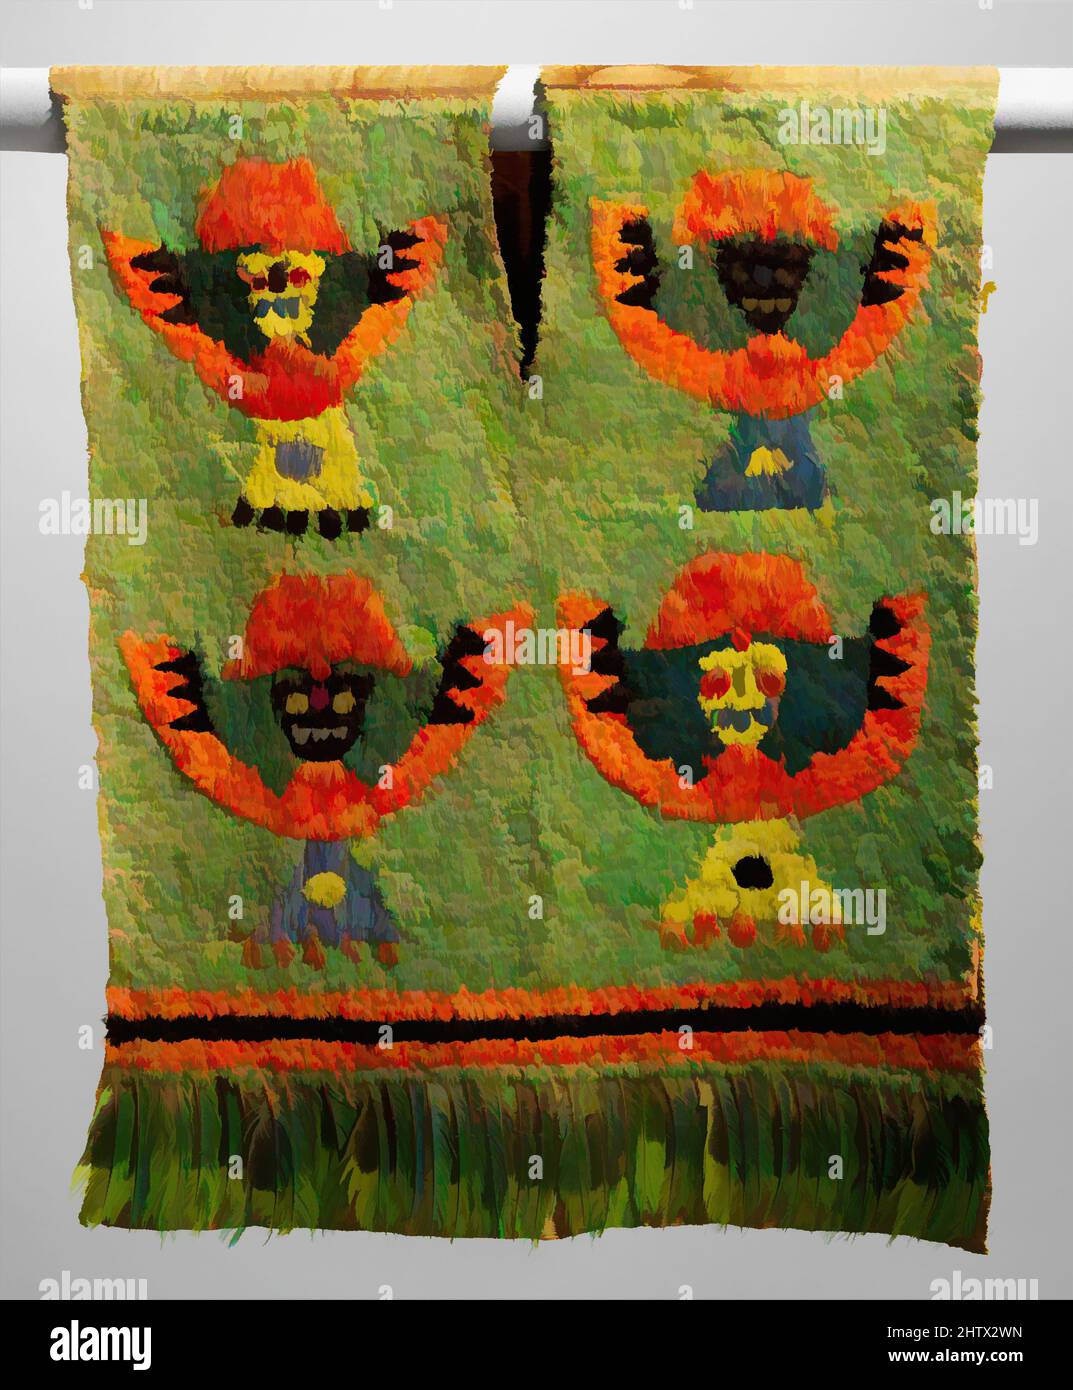 Kunst inspiriert von Feathered Tabard, 15.–Anfang des 17.. Jahrhunderts, Peru, Ica (?), Baumwolle, Federn, 25 x 30 Zoll (63,5 x 76,2 cm), Federn-Kostüme, Federn galten im alten Peru als Luxusmaterialien. Sie wurden verwendet, um Elite-Kostüm für Tausende von Jahren zu verzieren. Textilien dicht, Classic Works modernisiert von Artotop mit einem Schuss Moderne. Formen, Farbe und Wert, auffällige visuelle Wirkung auf Kunst. Emotionen durch Freiheit von Kunstwerken auf zeitgemäße Weise. Eine zeitlose Botschaft, die eine wild kreative neue Richtung verfolgt. Künstler, die sich dem digitalen Medium zuwenden und die Artotop NFT erschaffen Stockfoto